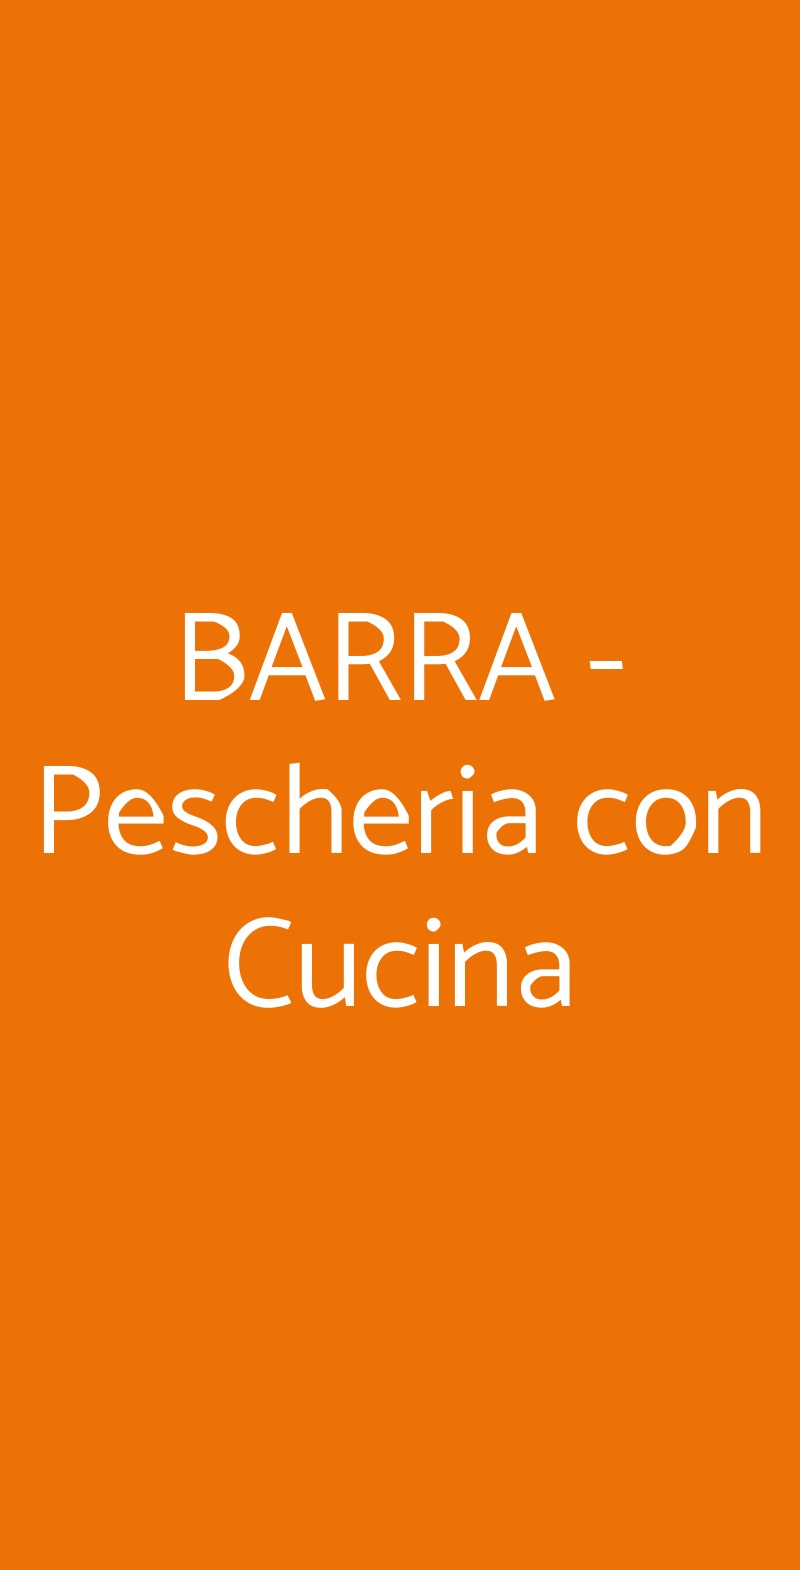 BARRA - Pescheria con Cucina Monterotondo menù 1 pagina